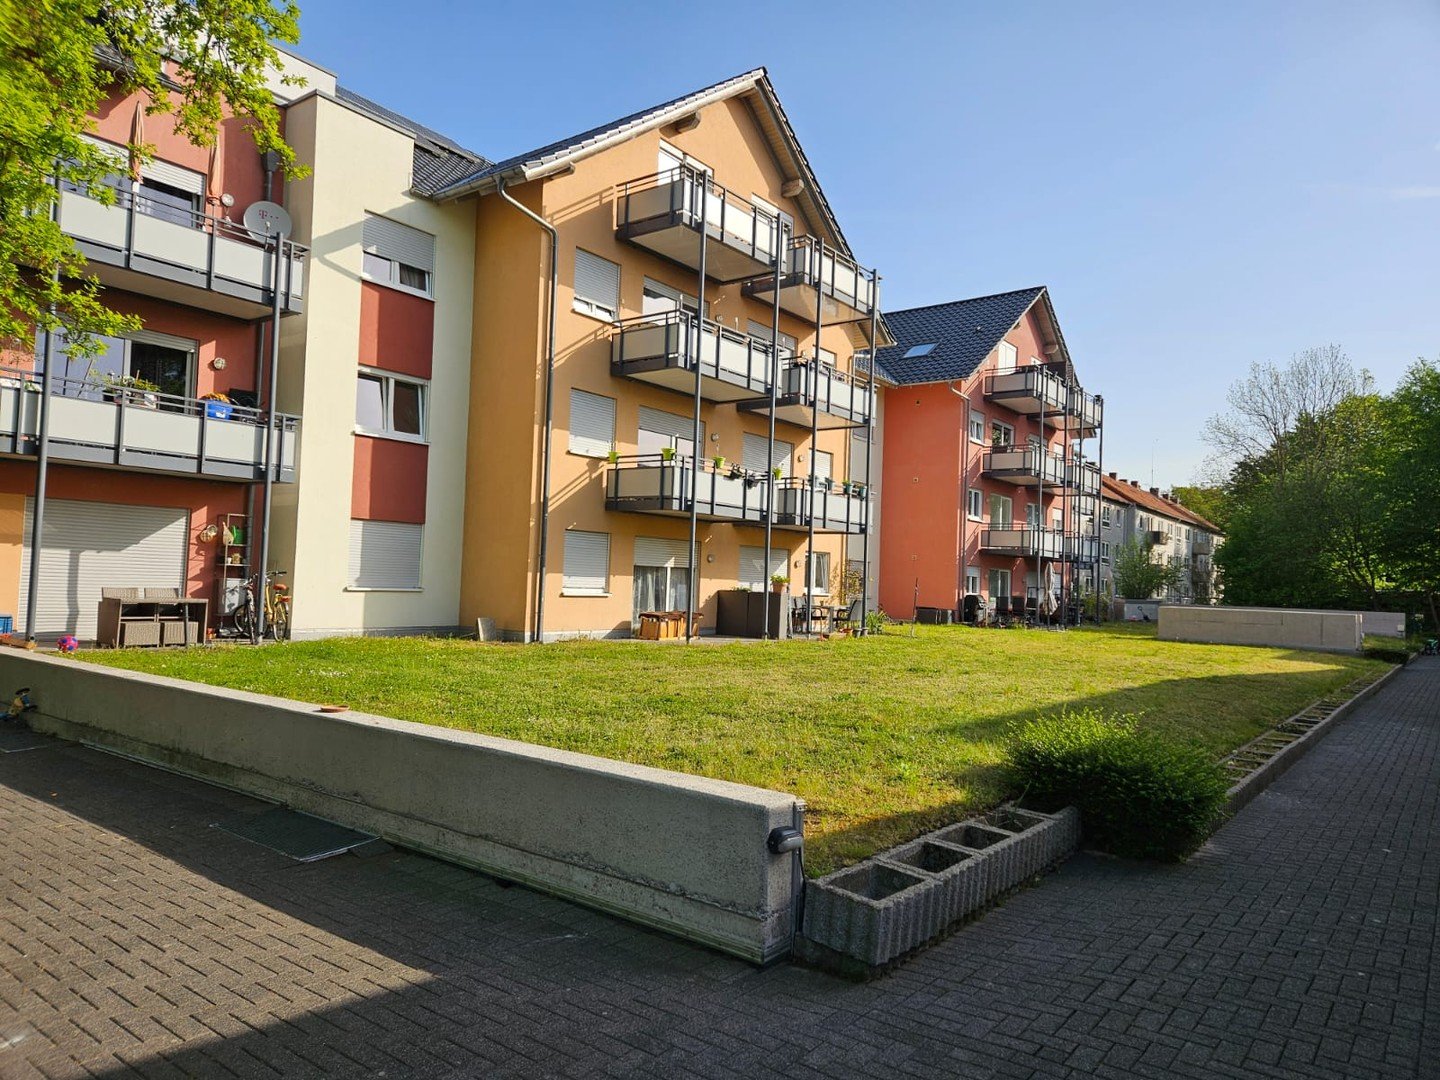 MFH Bielefeld a.d.Landwehr mit 30 Wohnungen, Mietrendite ca. 5%